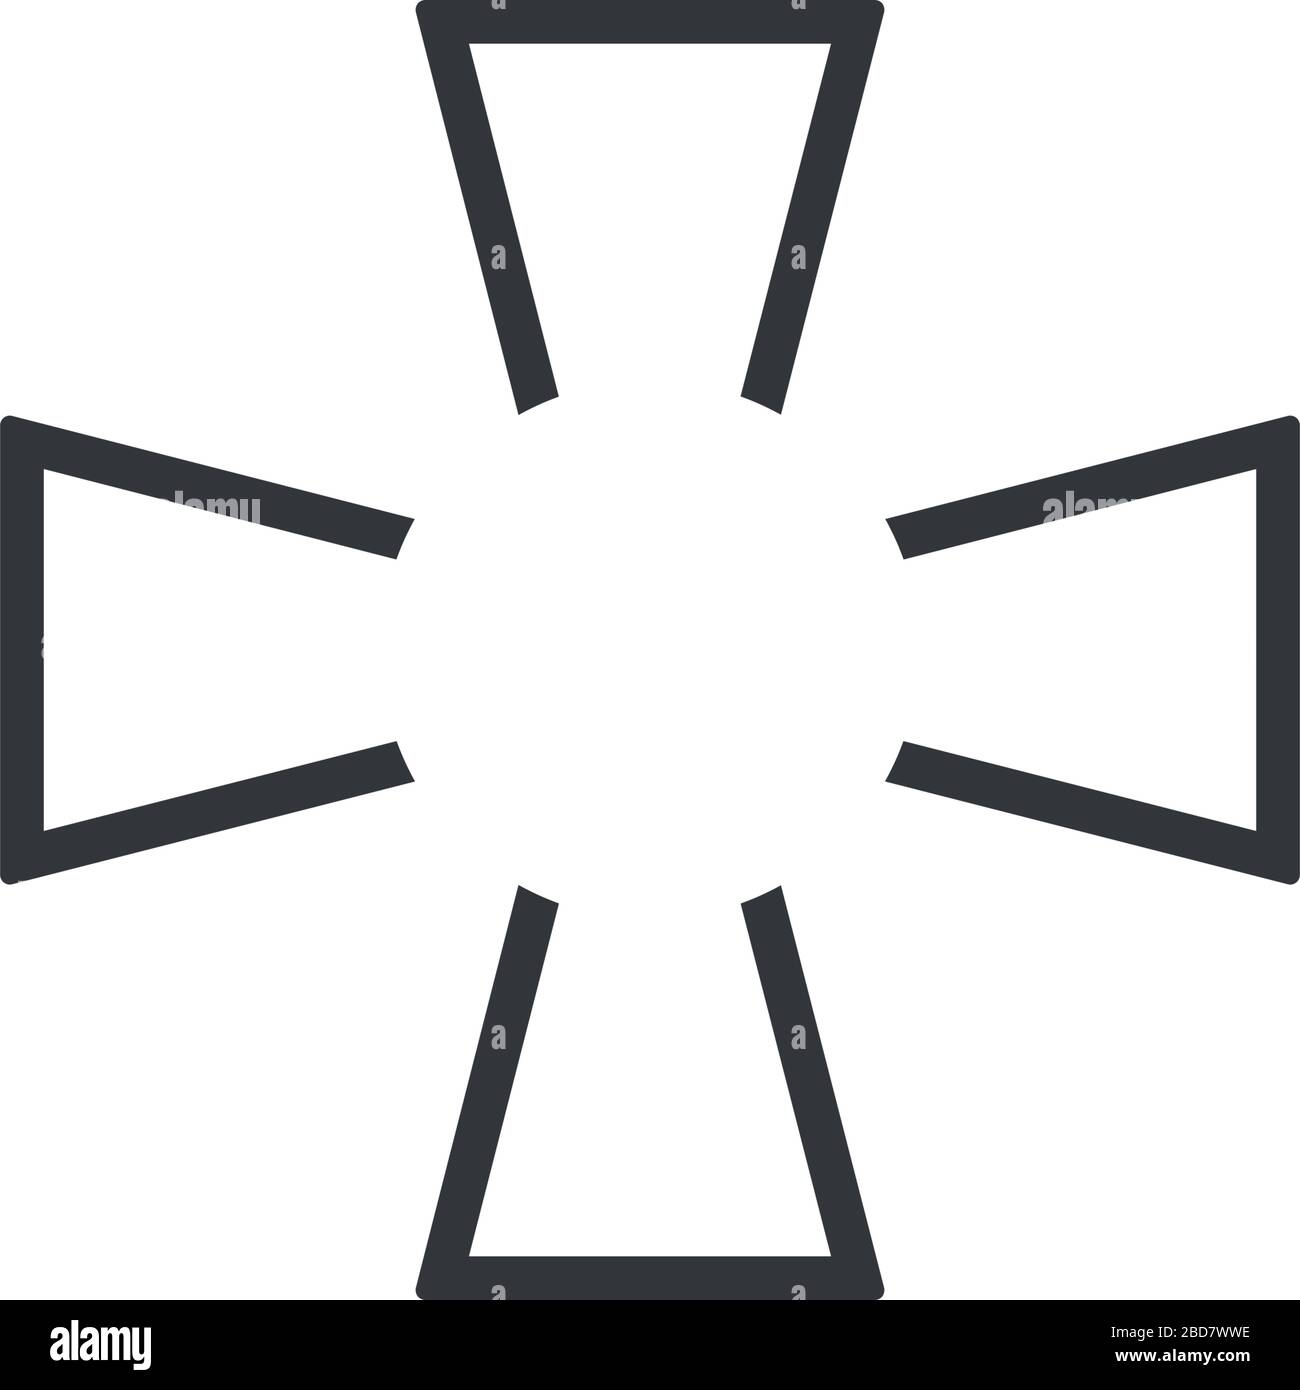 Choppers militär-amy-Kreuz. Darstellung des Stock-Vektors auf weißem Hintergrund isoliert. Stock Vektor